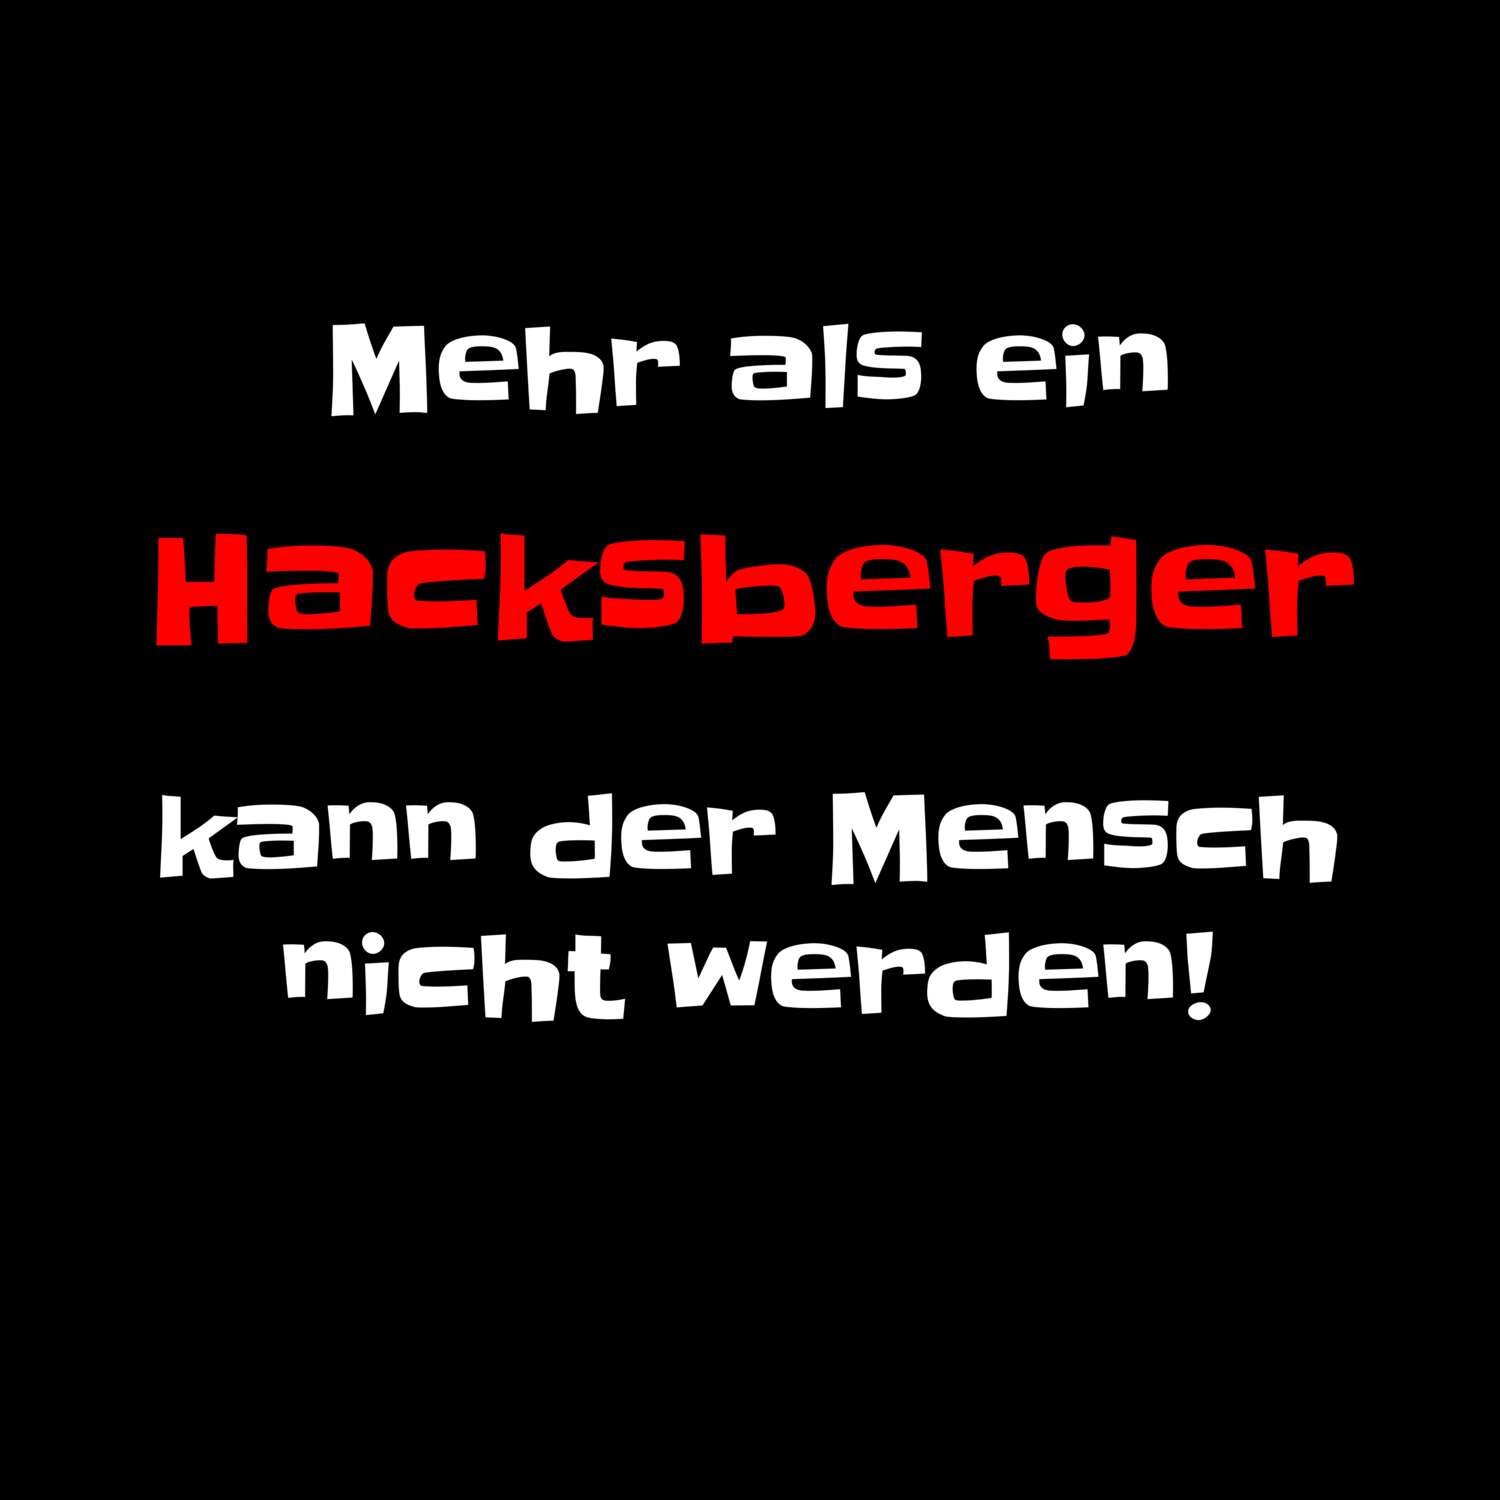 Hacksberg T-Shirt »Mehr als ein«